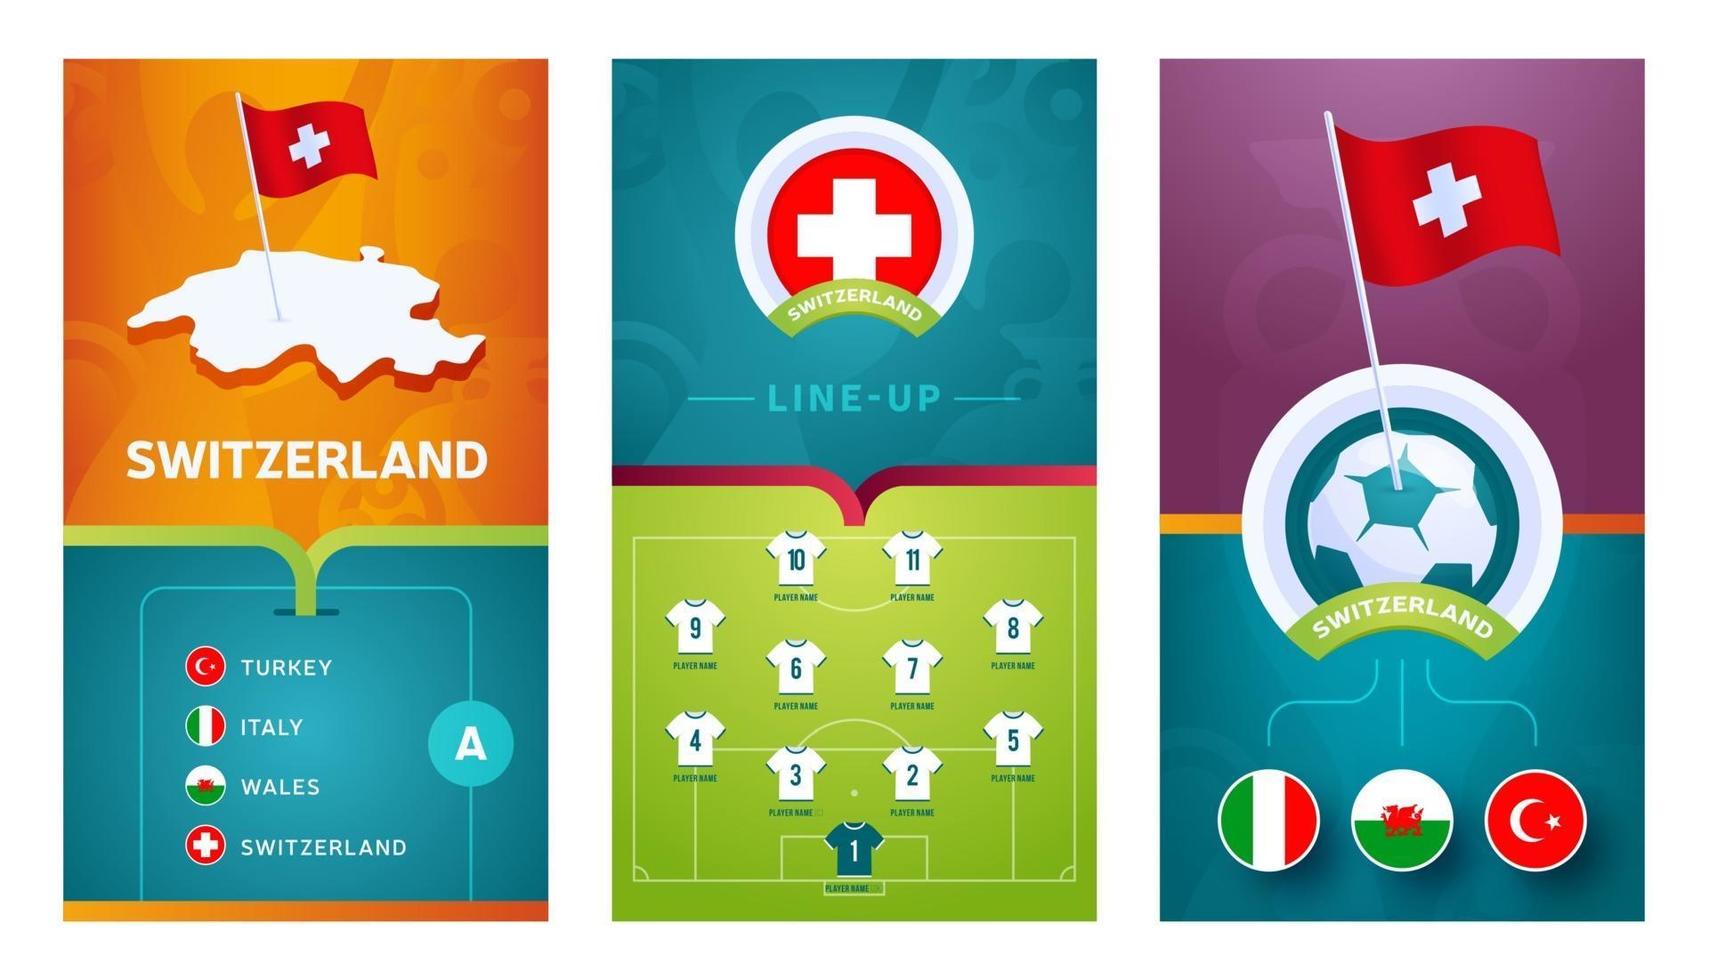 conjunto de banners verticales de fútbol europeo del equipo de suiza para redes sociales vector